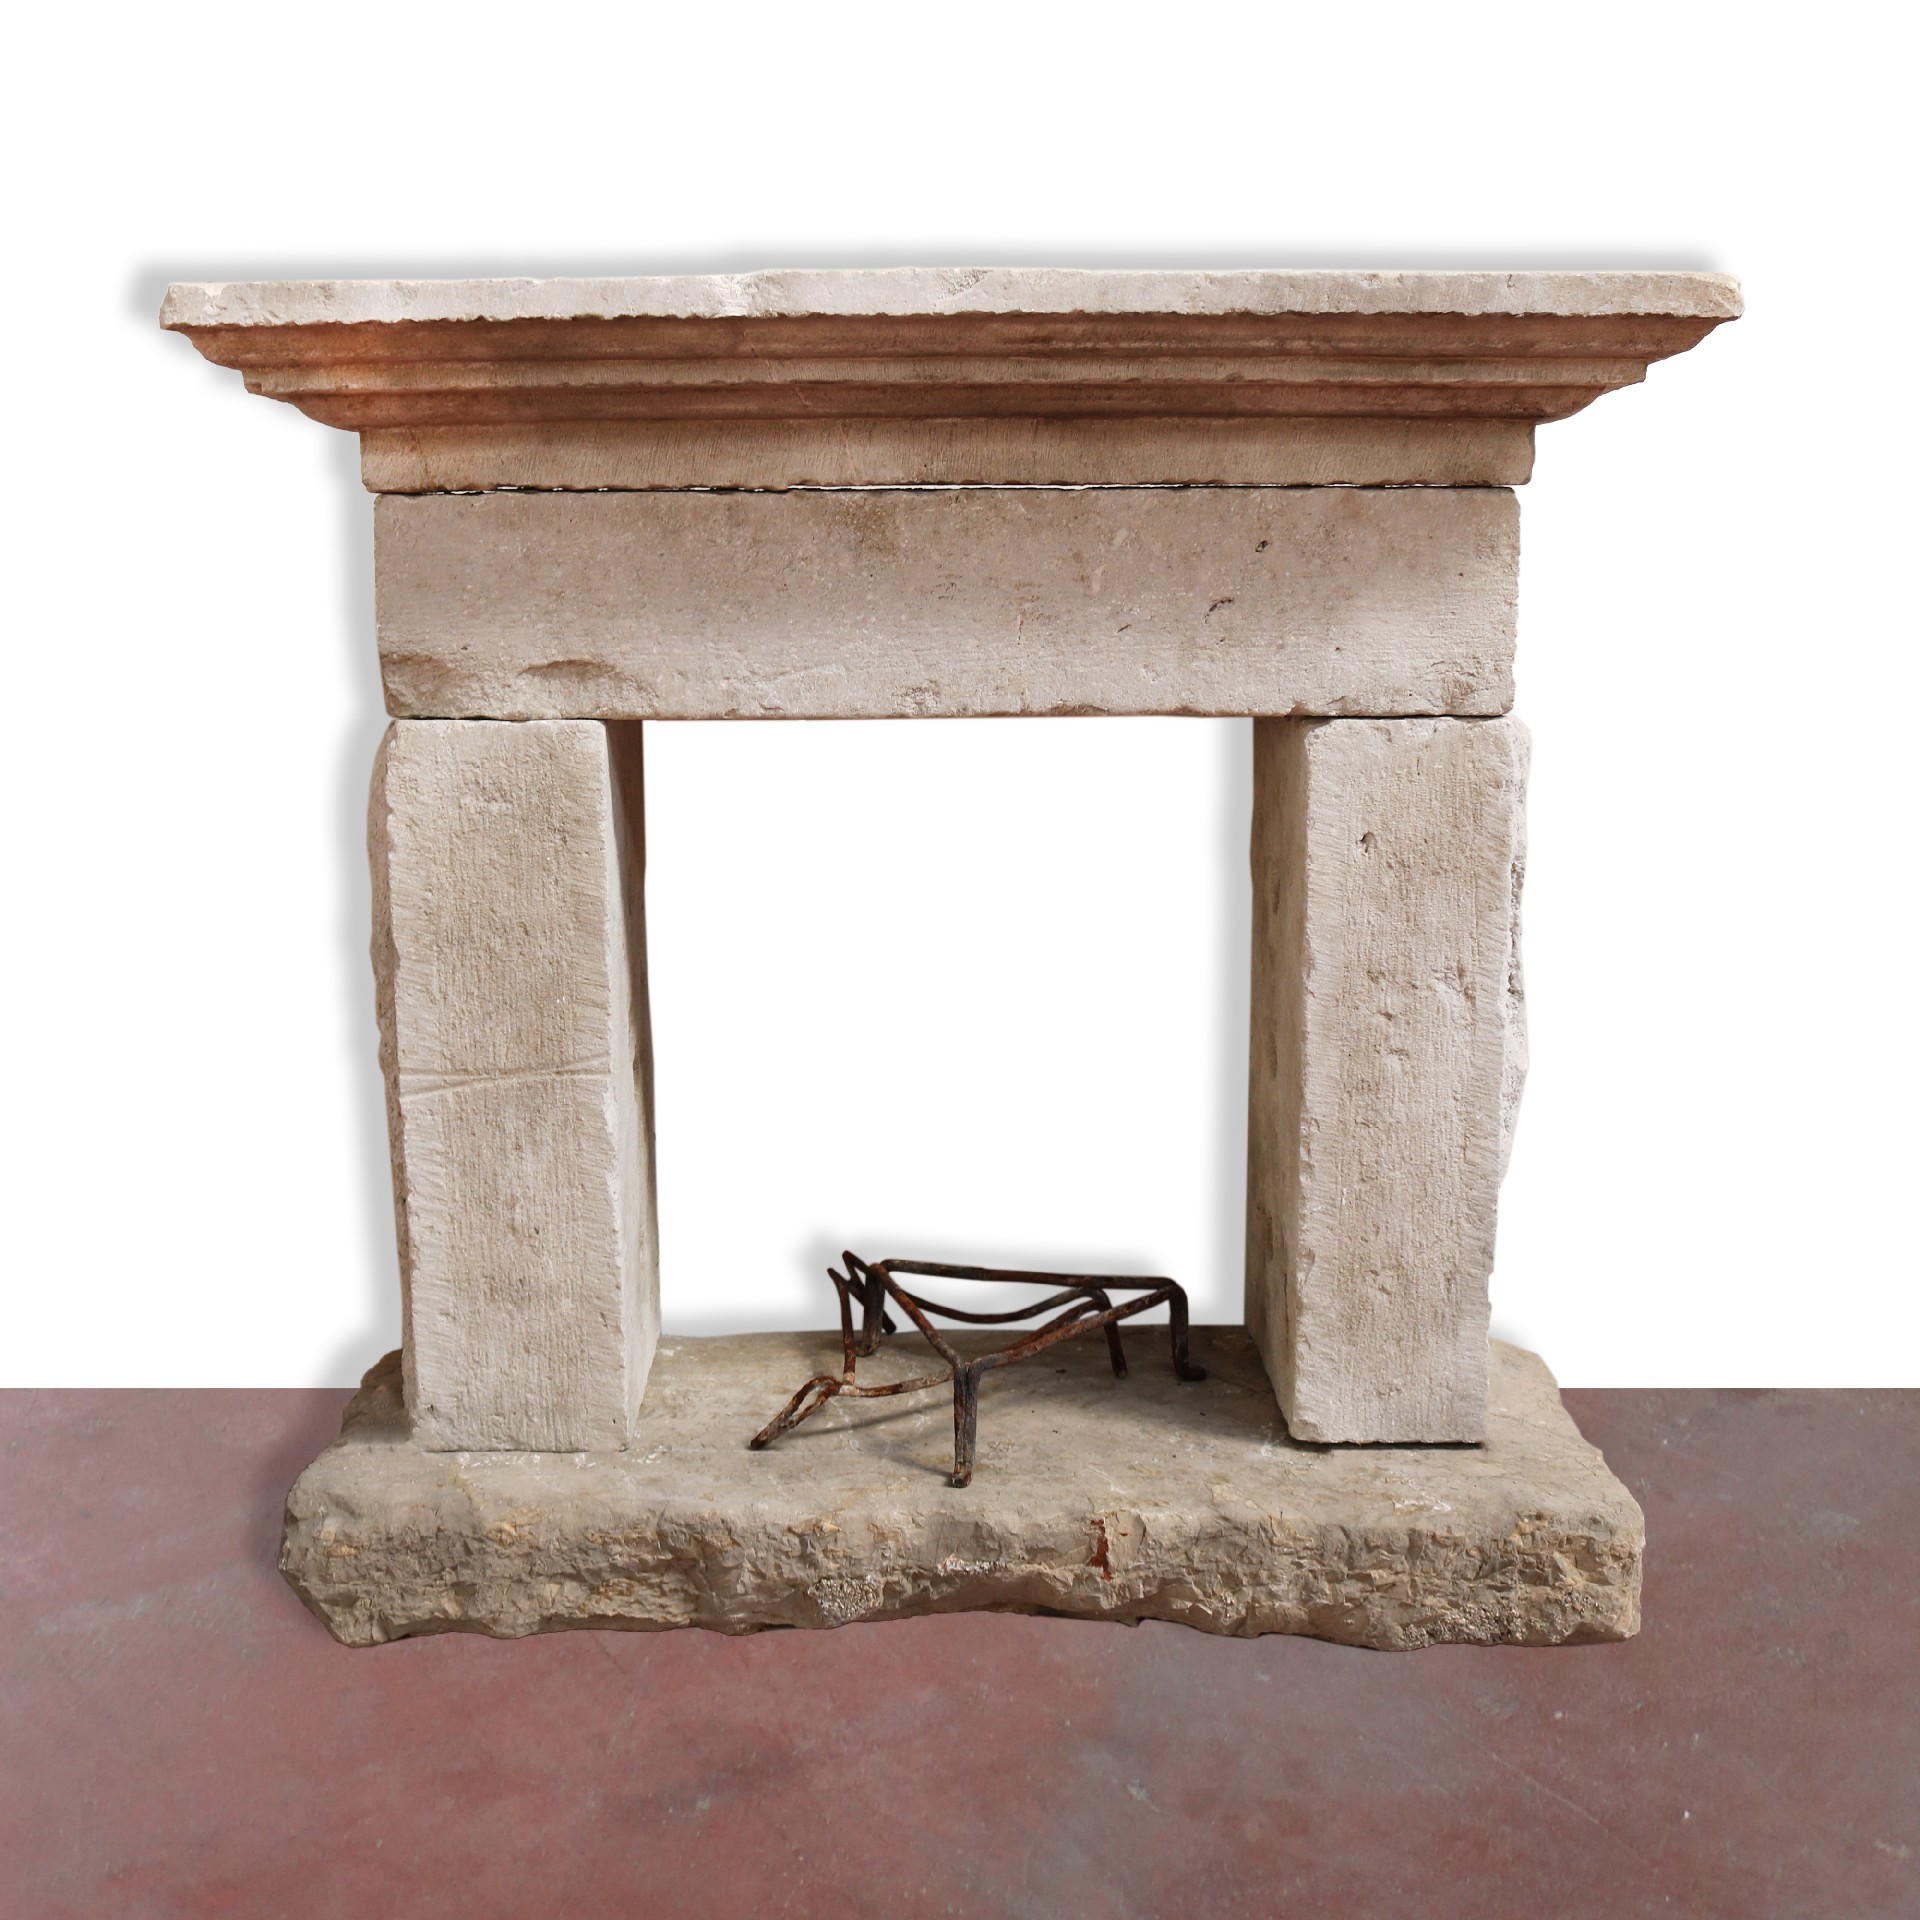 Antico camino in pietra, cm 95x79 h. - Camini Antichi - Camini e Accessori - Prodotti - Antichità Fiorillo